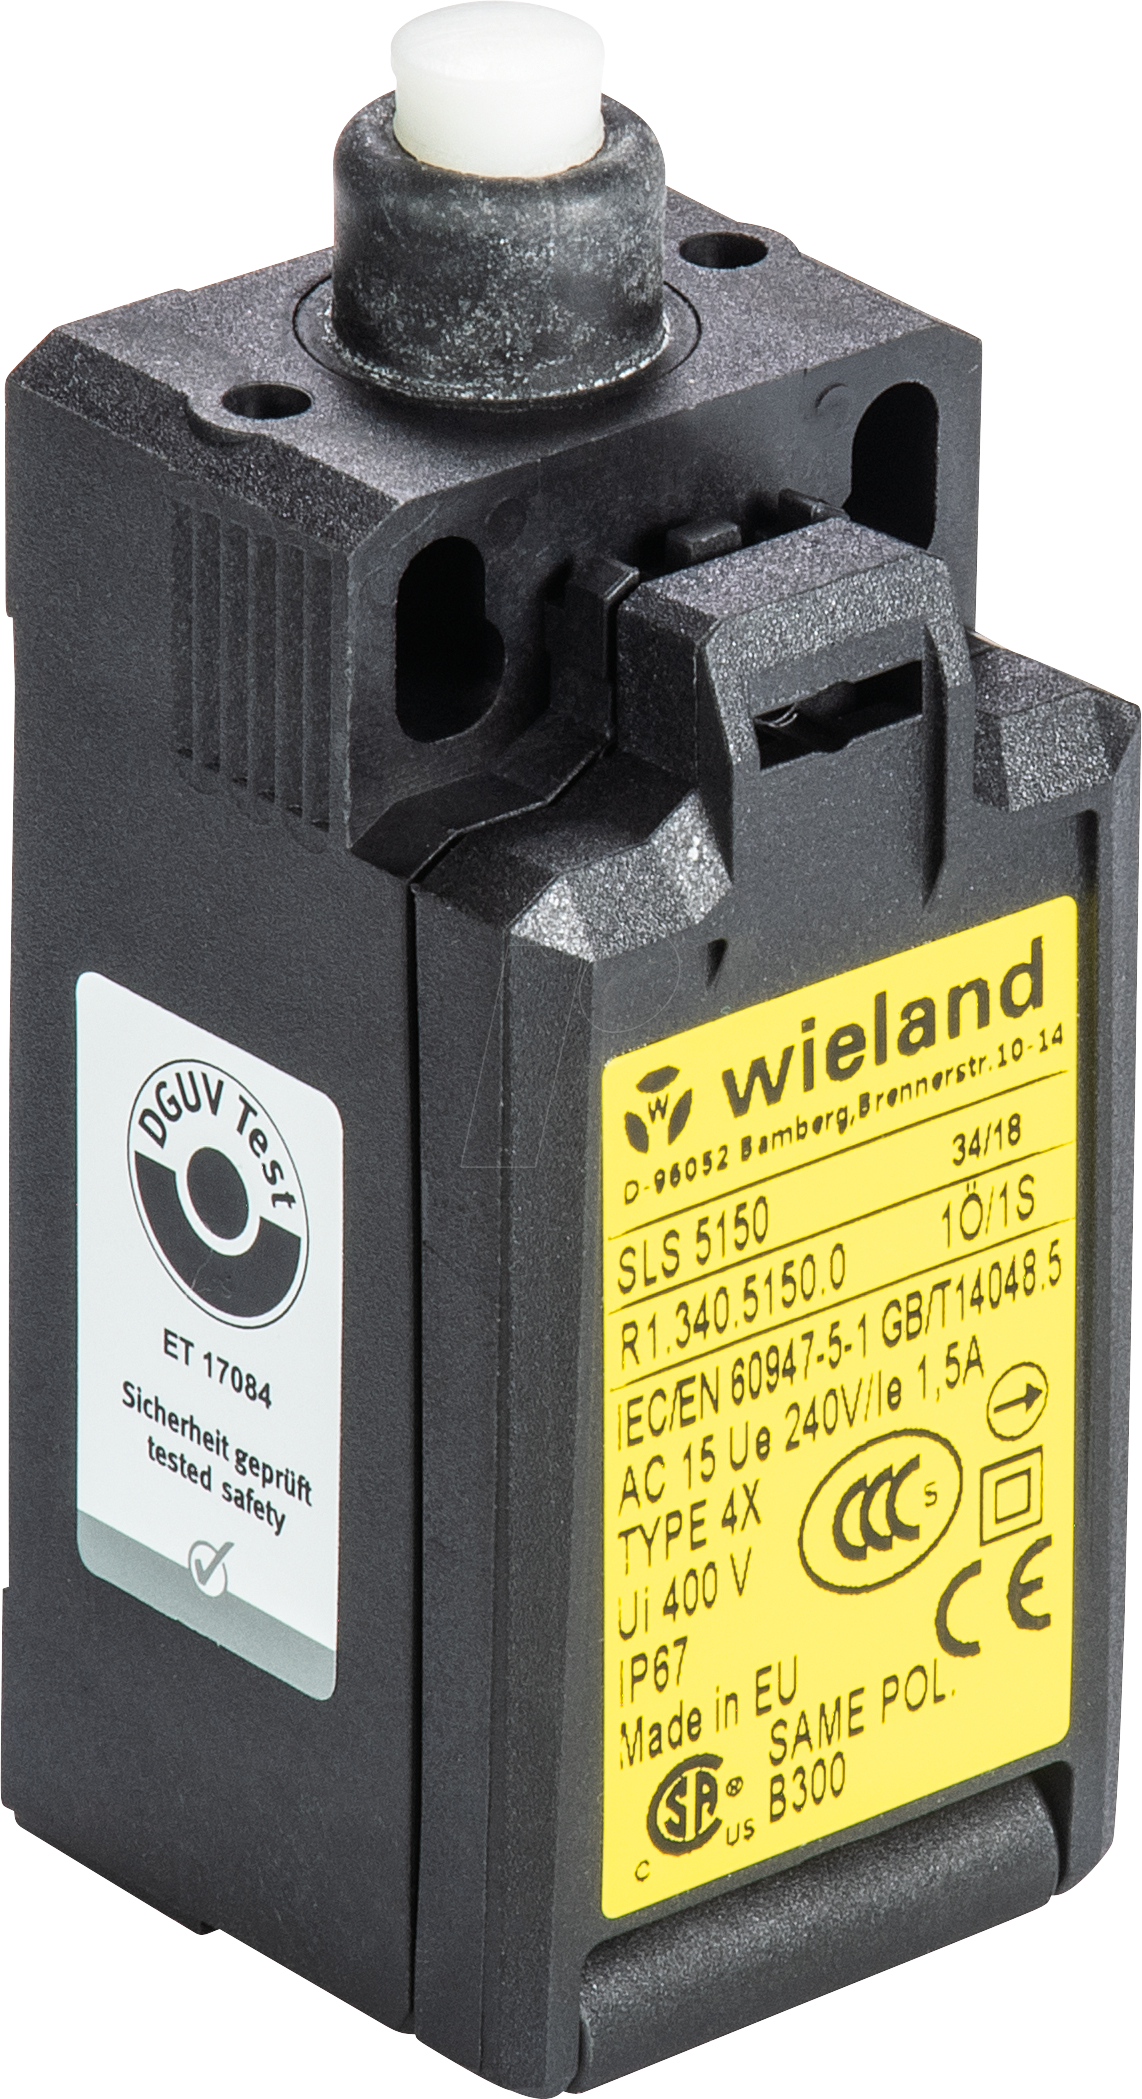 SLS 6250 - Sicherheitsschalter SLS 6250, 1 NC + 1 NO von Wieland